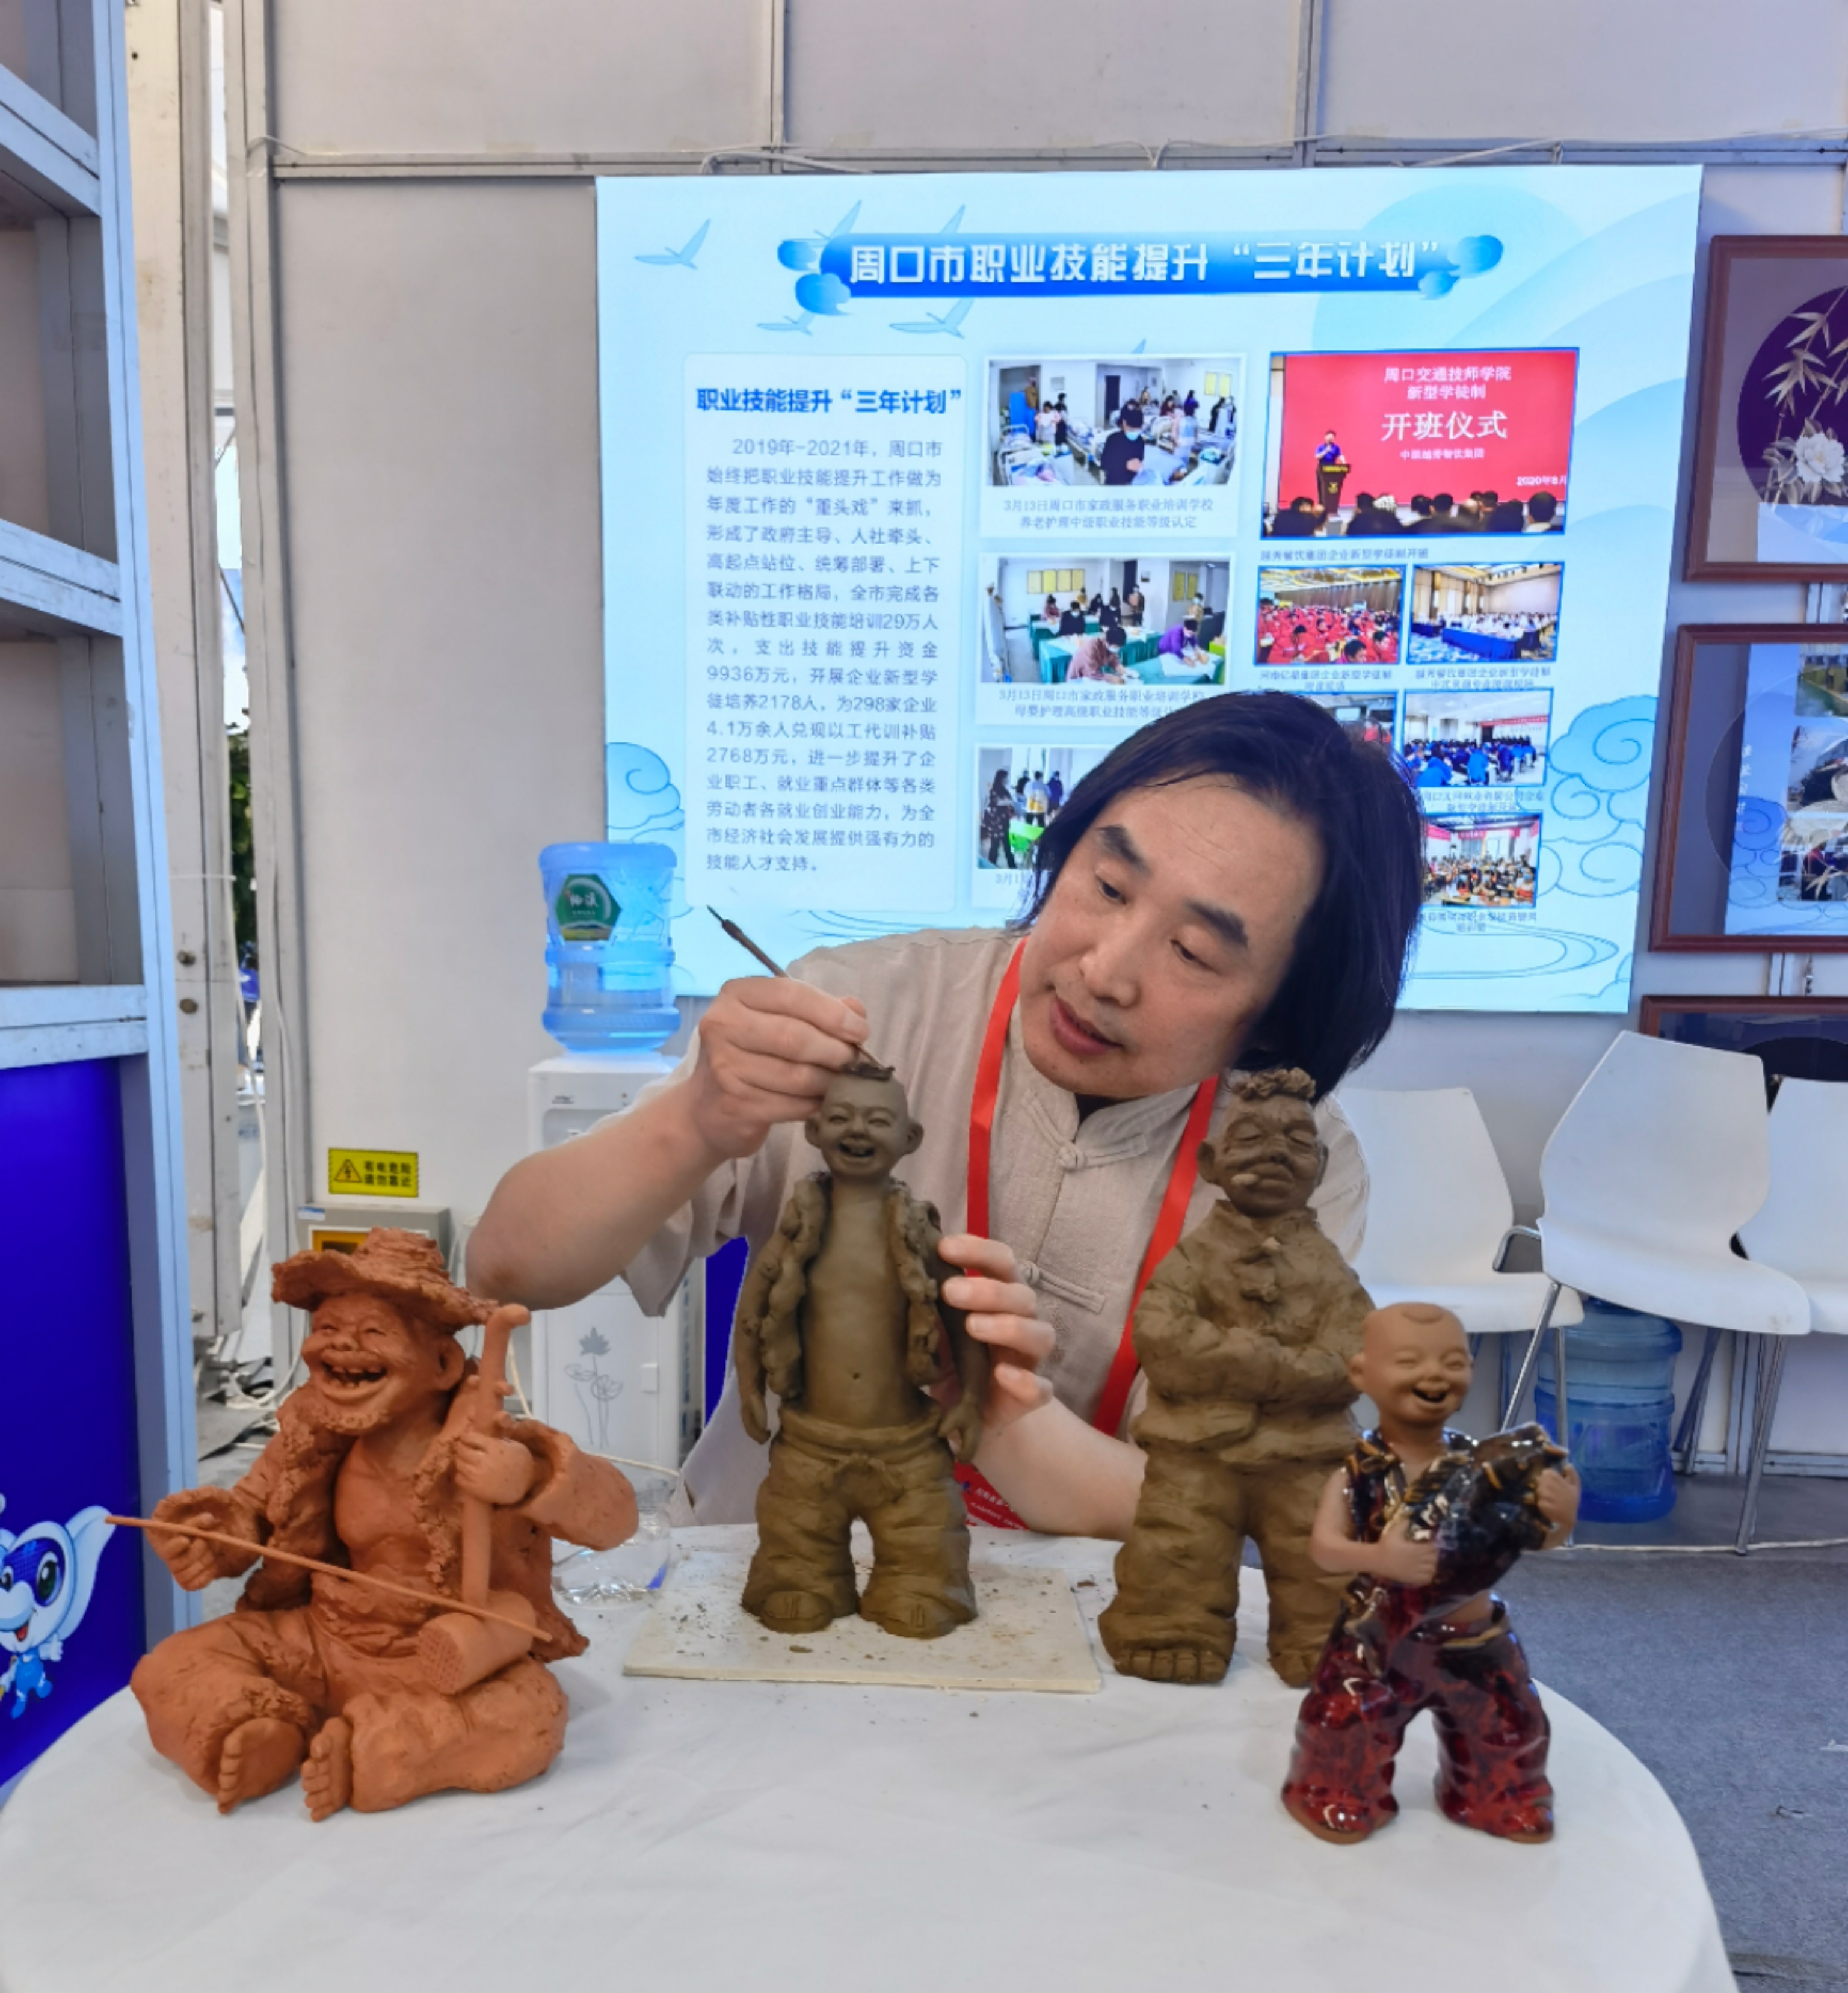 张振福钧瓷泥塑在河南省第一届职业技能大赛上亮相